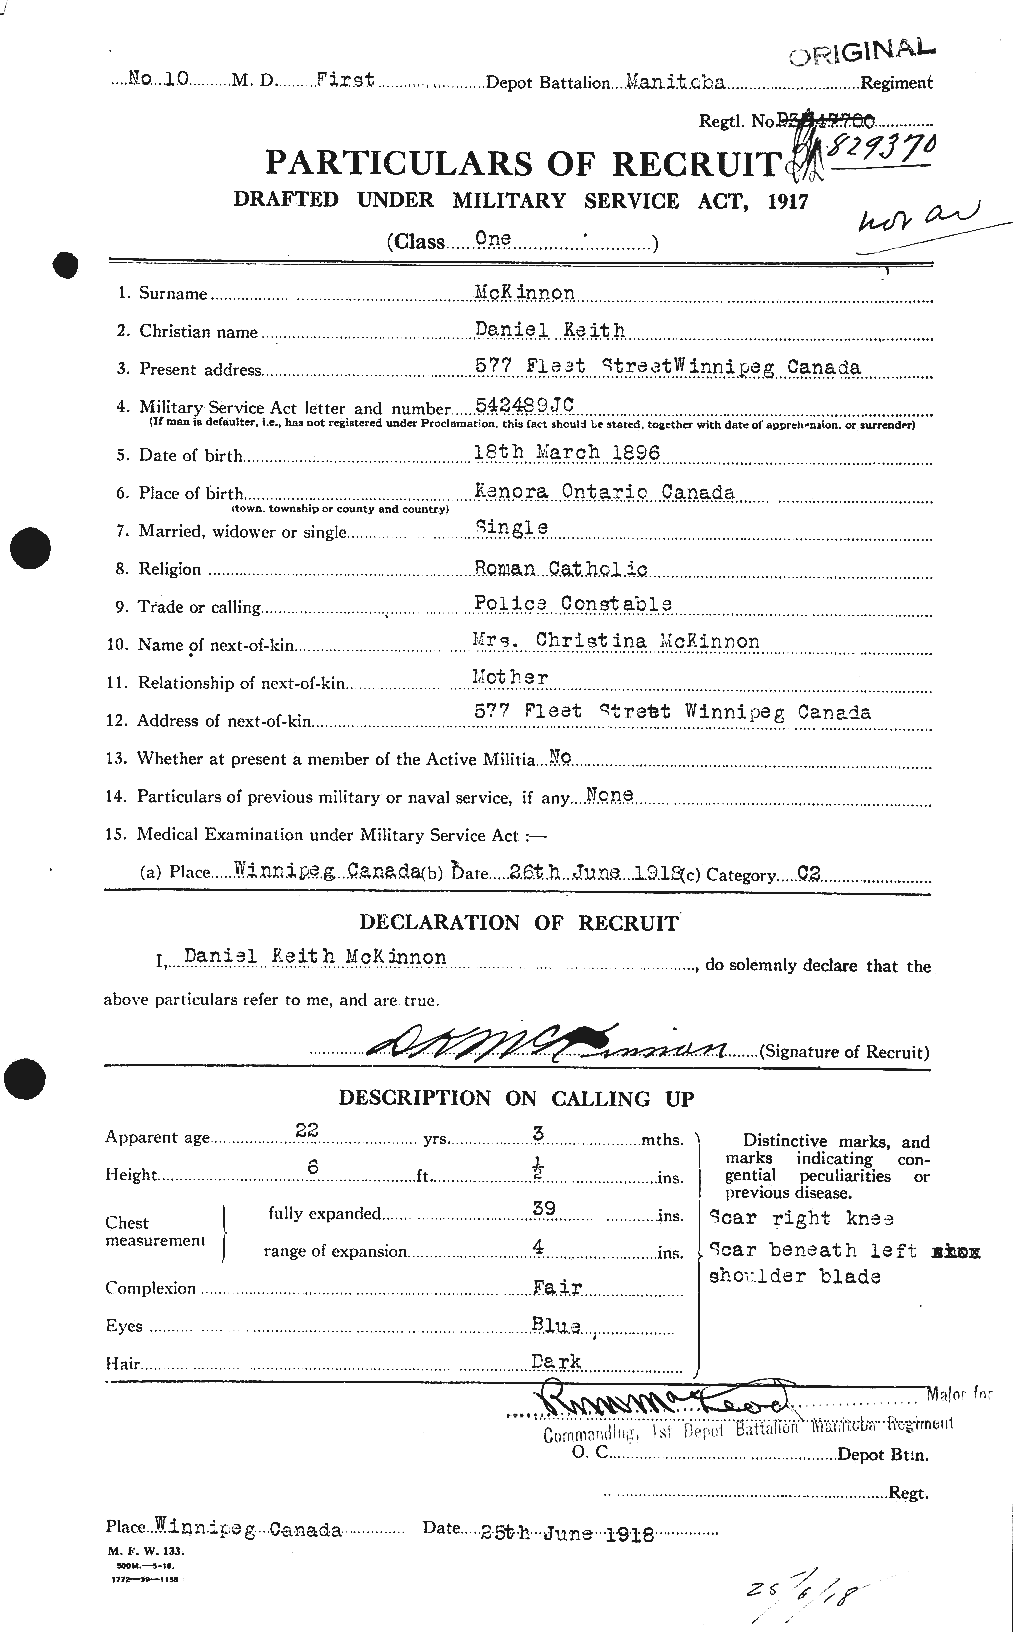 Dossiers du Personnel de la Première Guerre mondiale - CEC 531337a